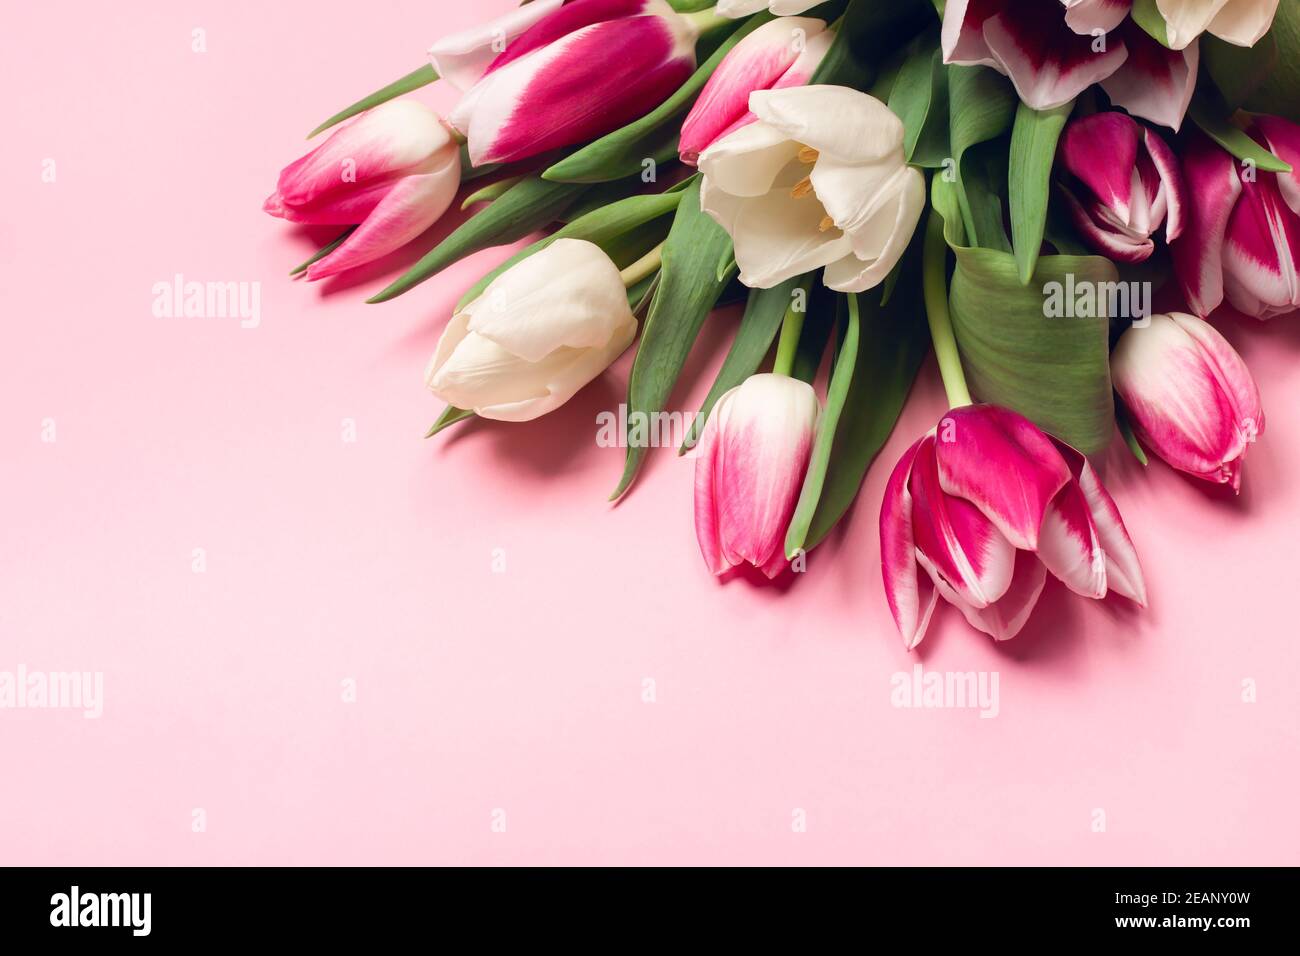 Blumenstrauß mit Tulpen in rosa und weißen Farben. Frühlings-Konzept, Frauentag, Muttertag, 8. März, die Weihnachtsgrüße. Kopierbereich, flaches Layout. Stockfoto